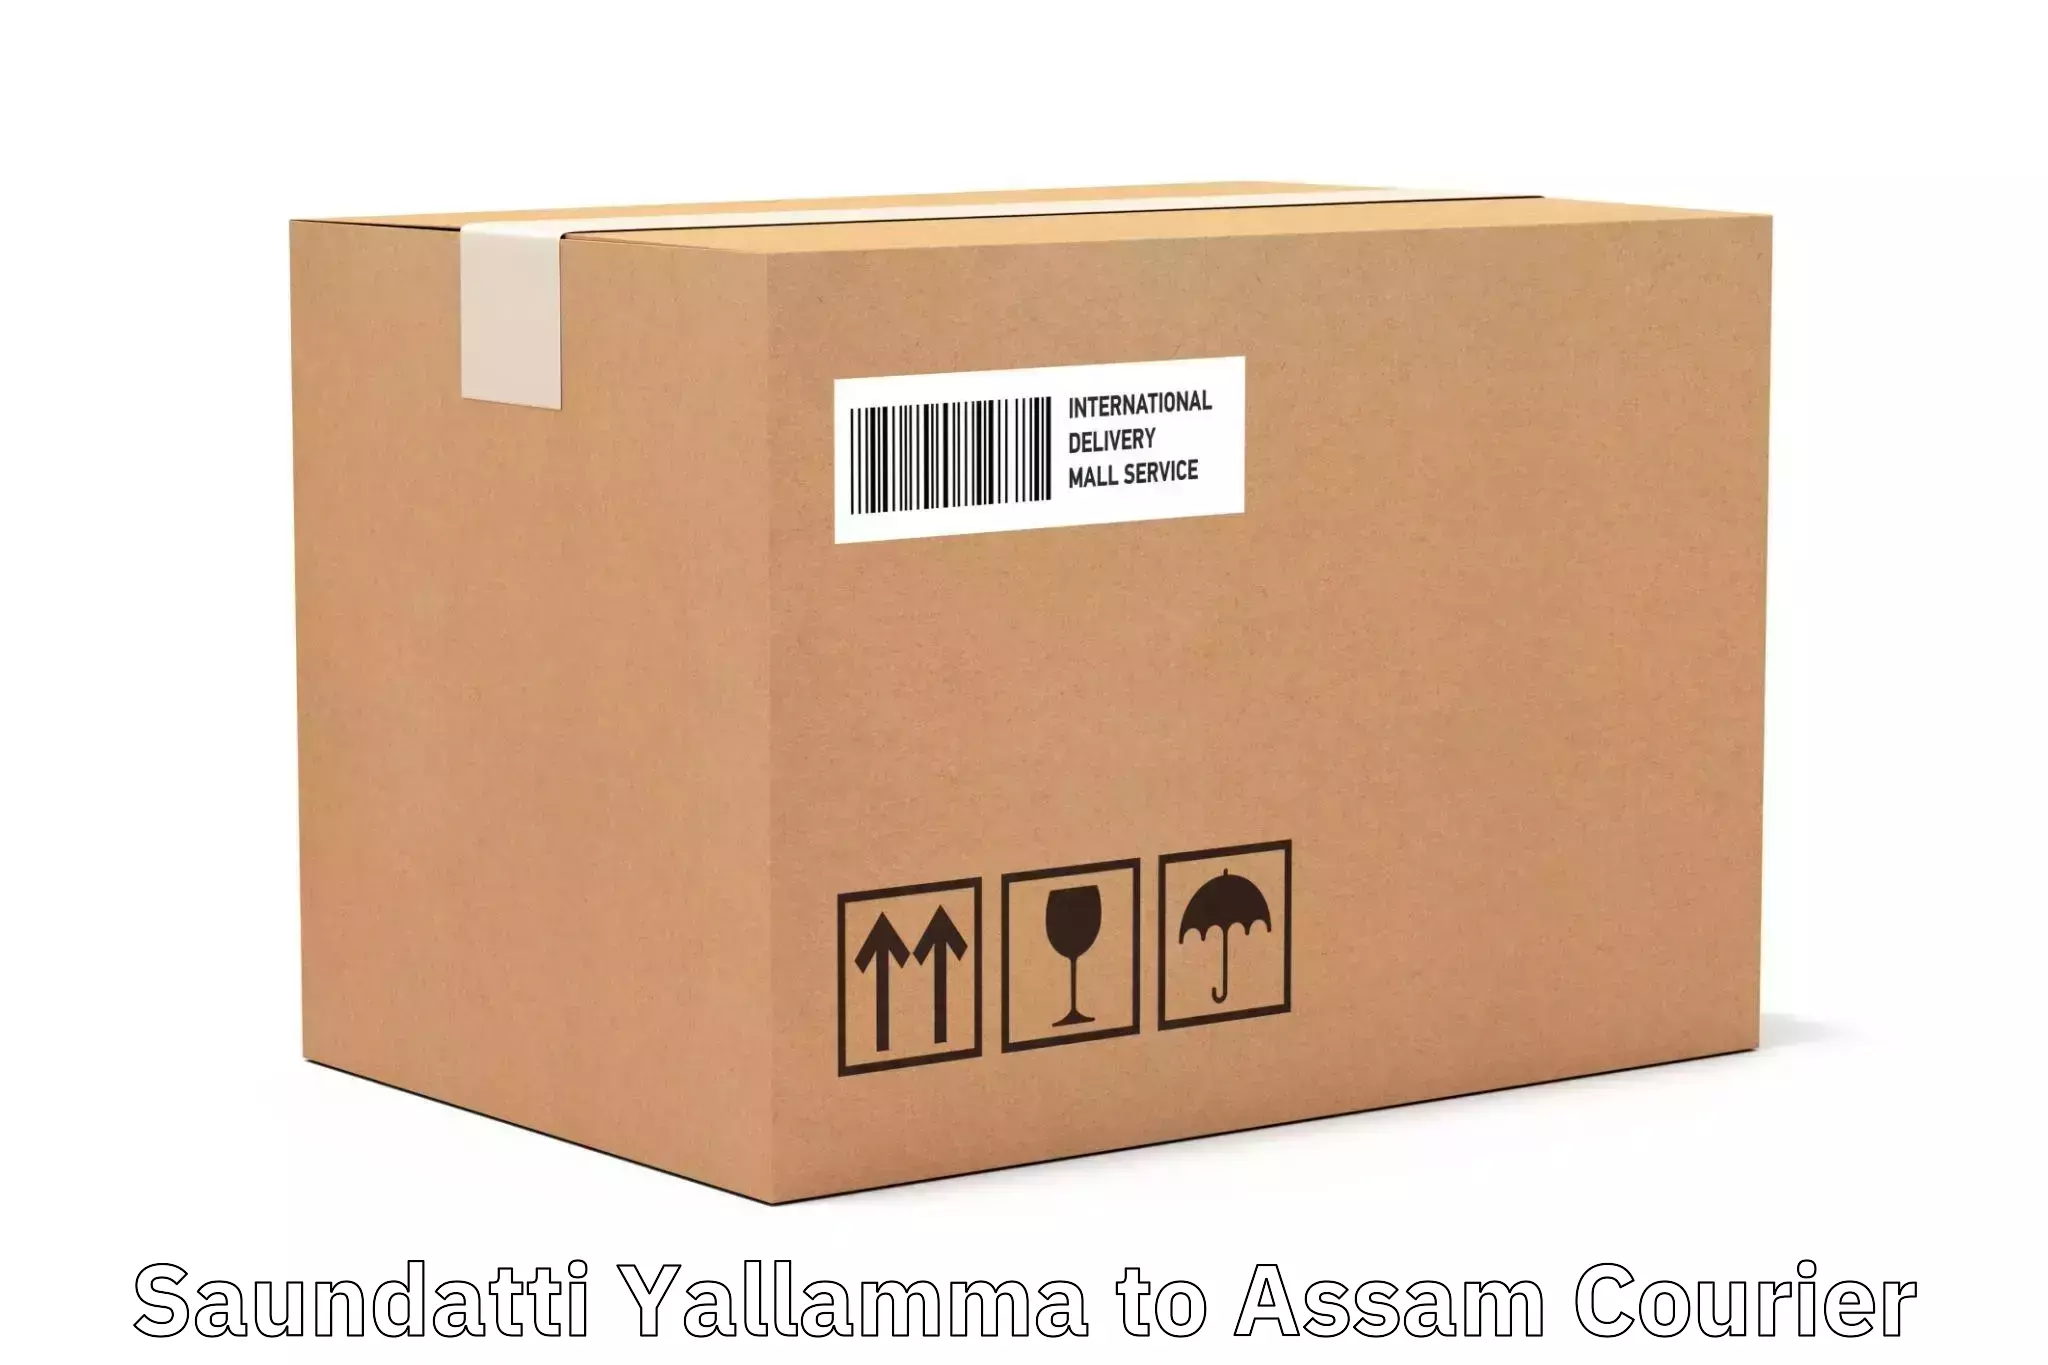 Small parcel delivery Saundatti Yallamma to Dhekiajuli